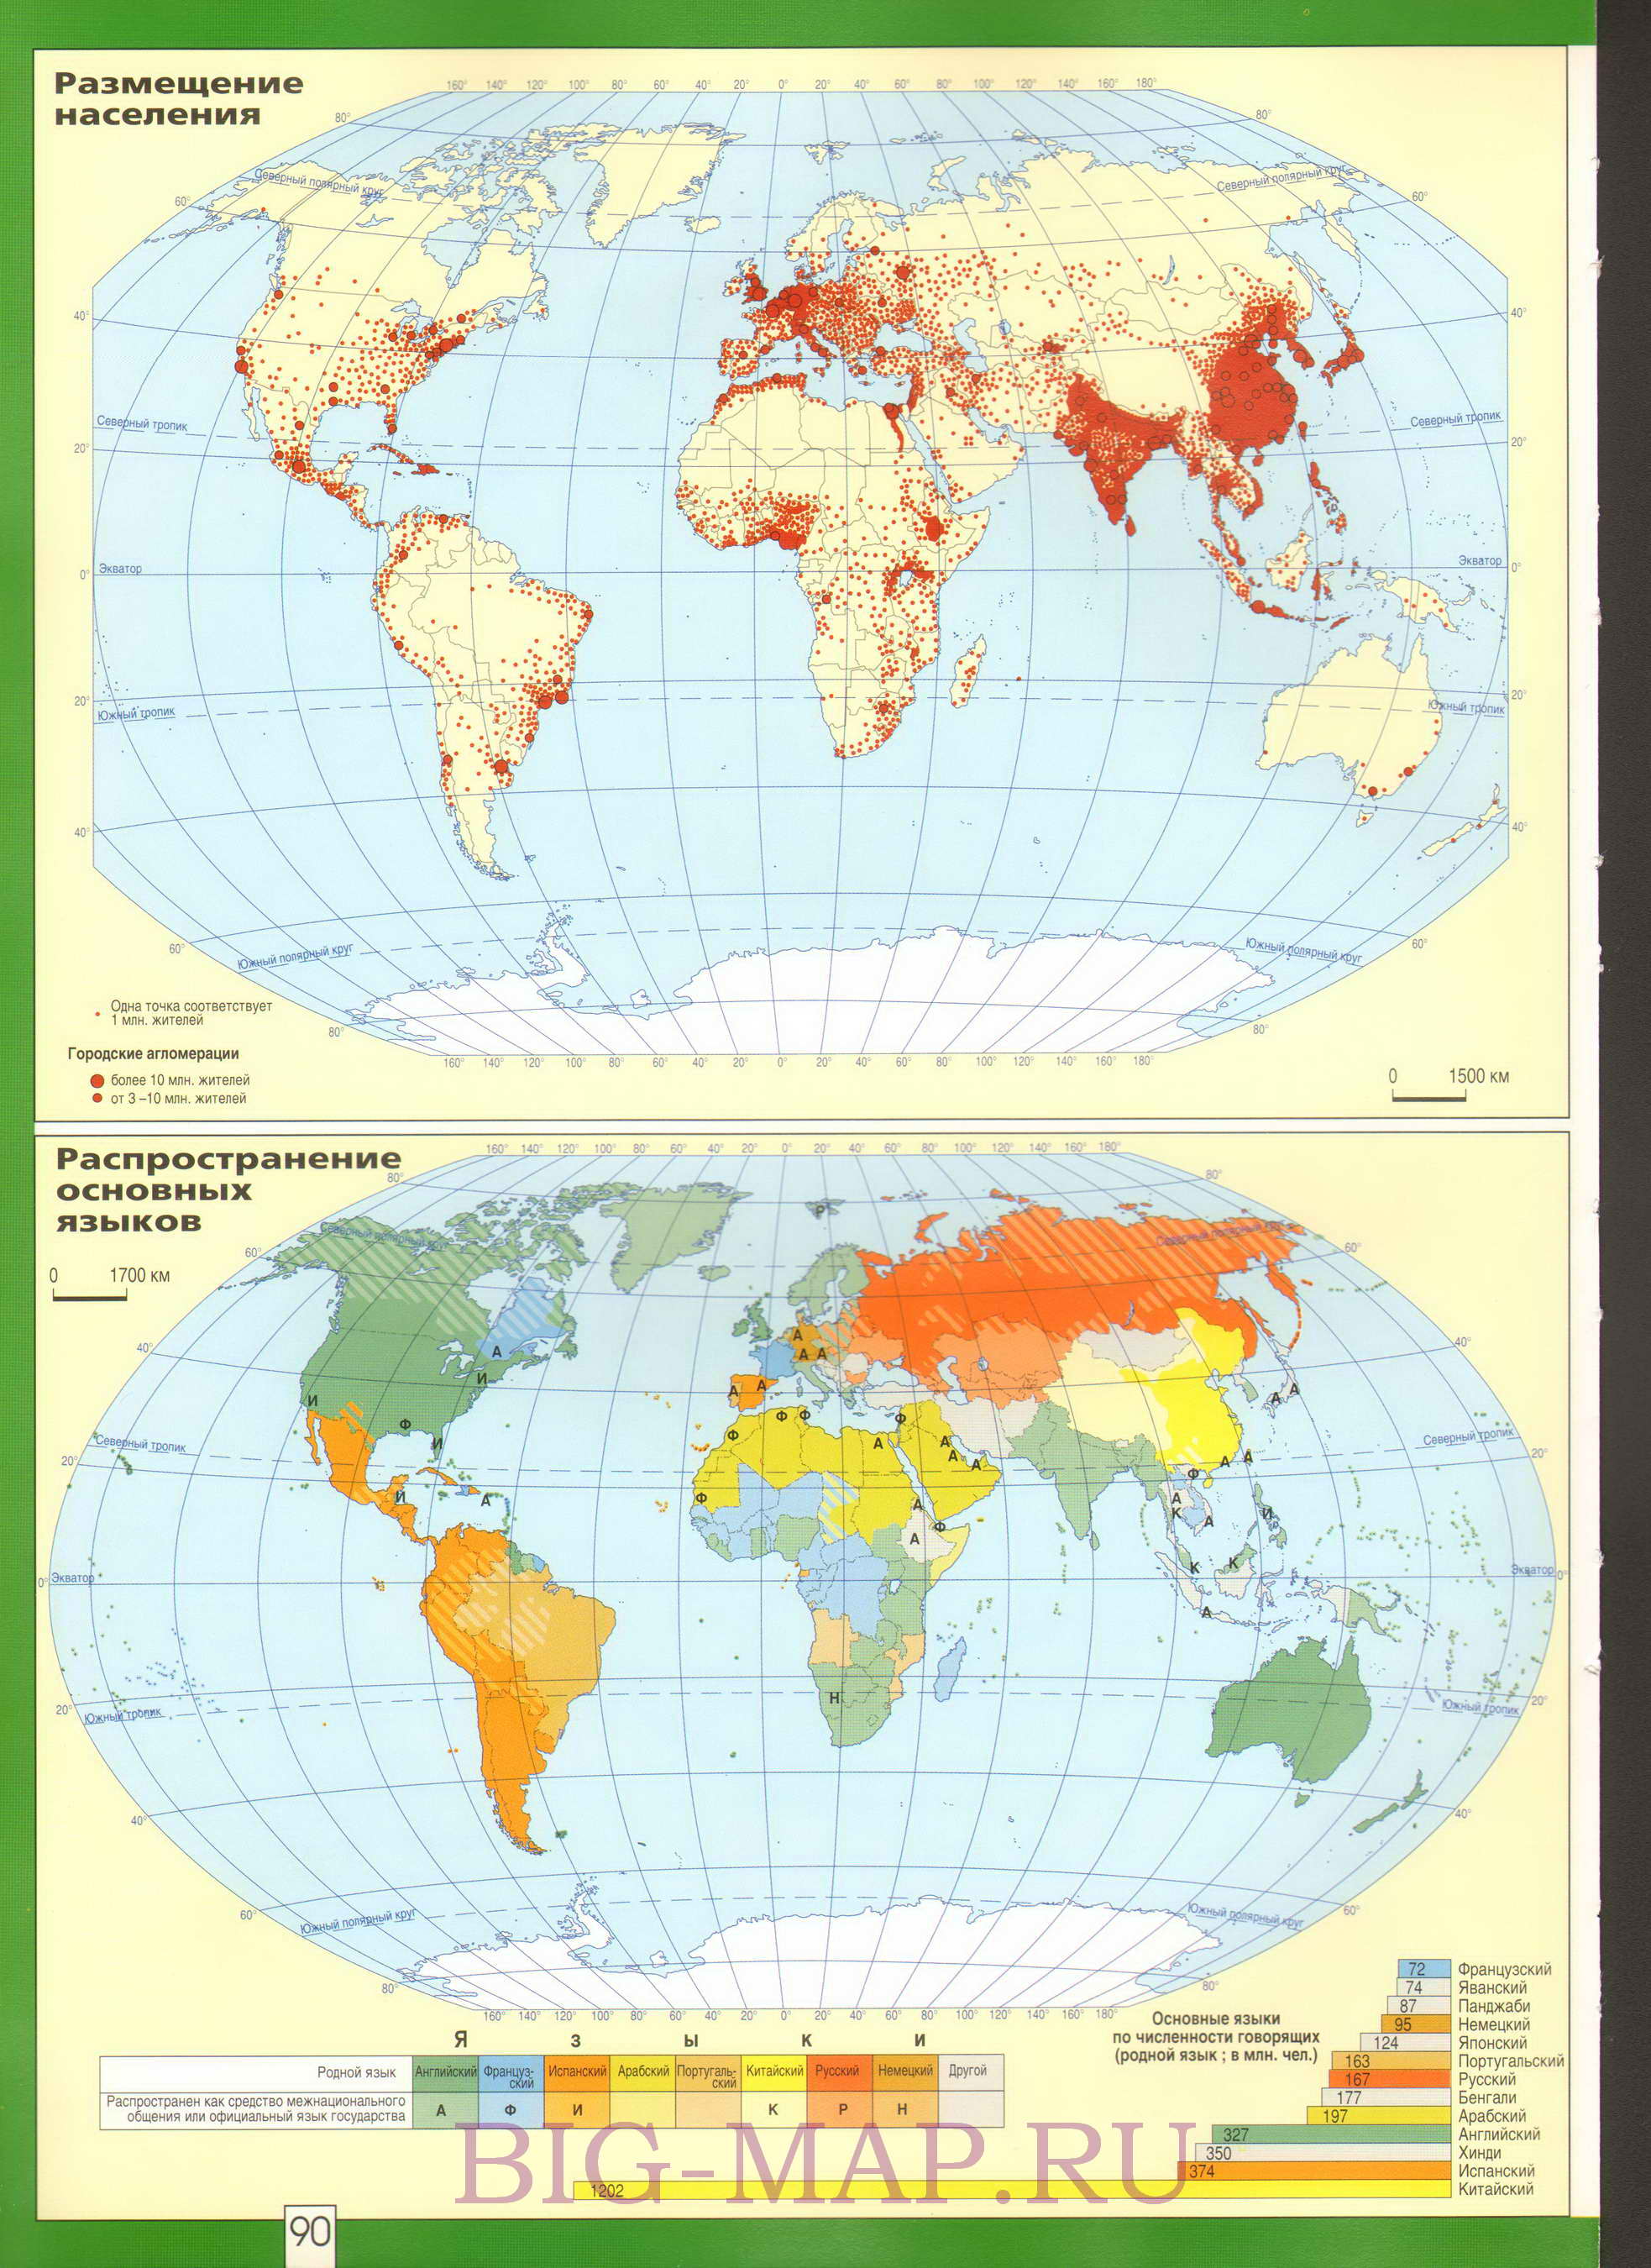 Карта размещения населения мира. Карта плотности населения на земном шаре ираспространения основных языков, A0 -